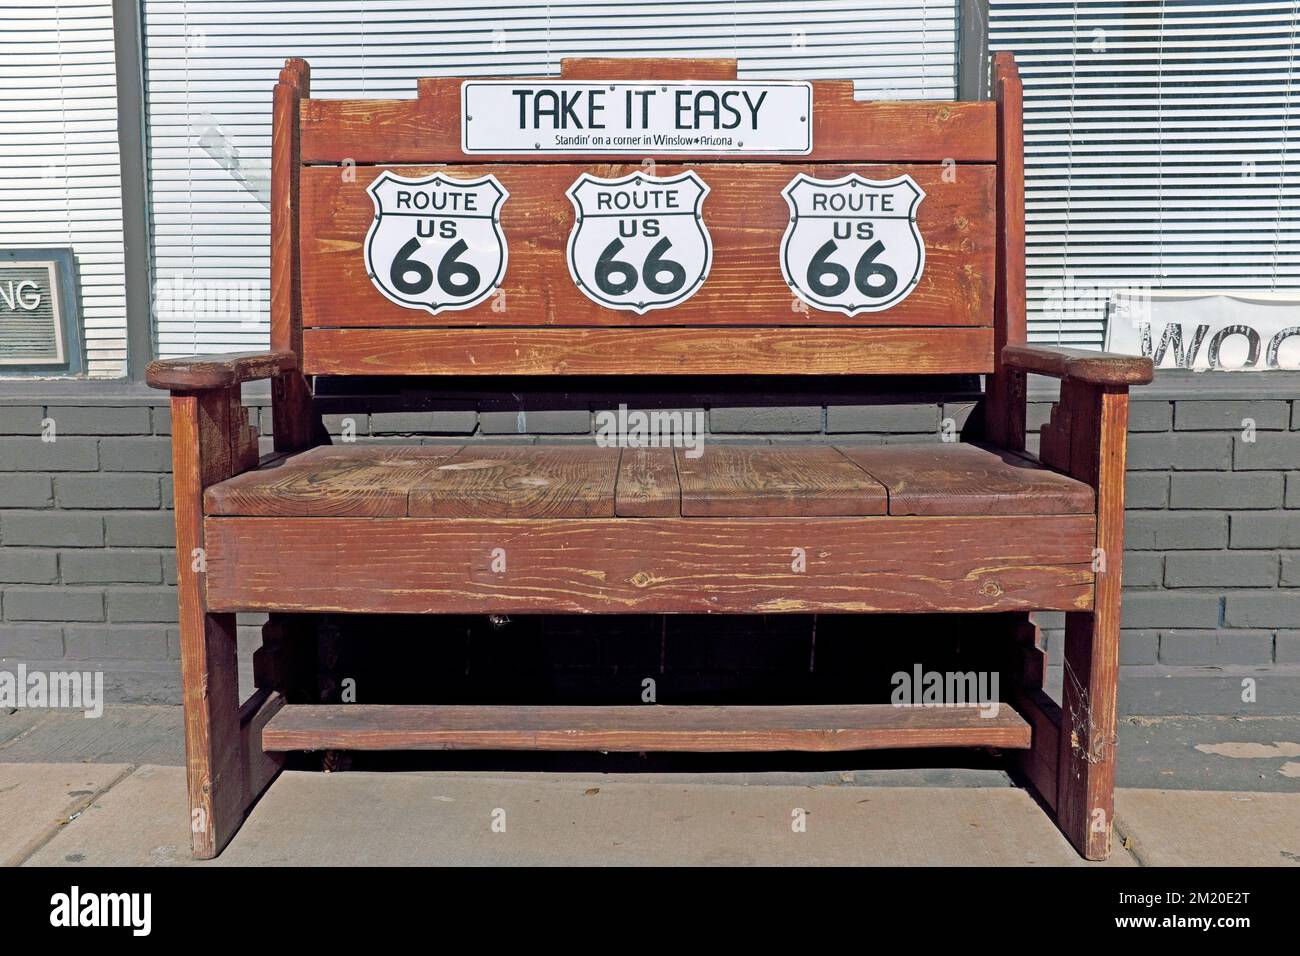 Una panca di parco in legno si trova sulla Route 66 nel centro di Winslow, Arizona, USA, con tre segnali stradali per la Route 66 e un cartello con la scritta "Take IT Easy". Foto Stock